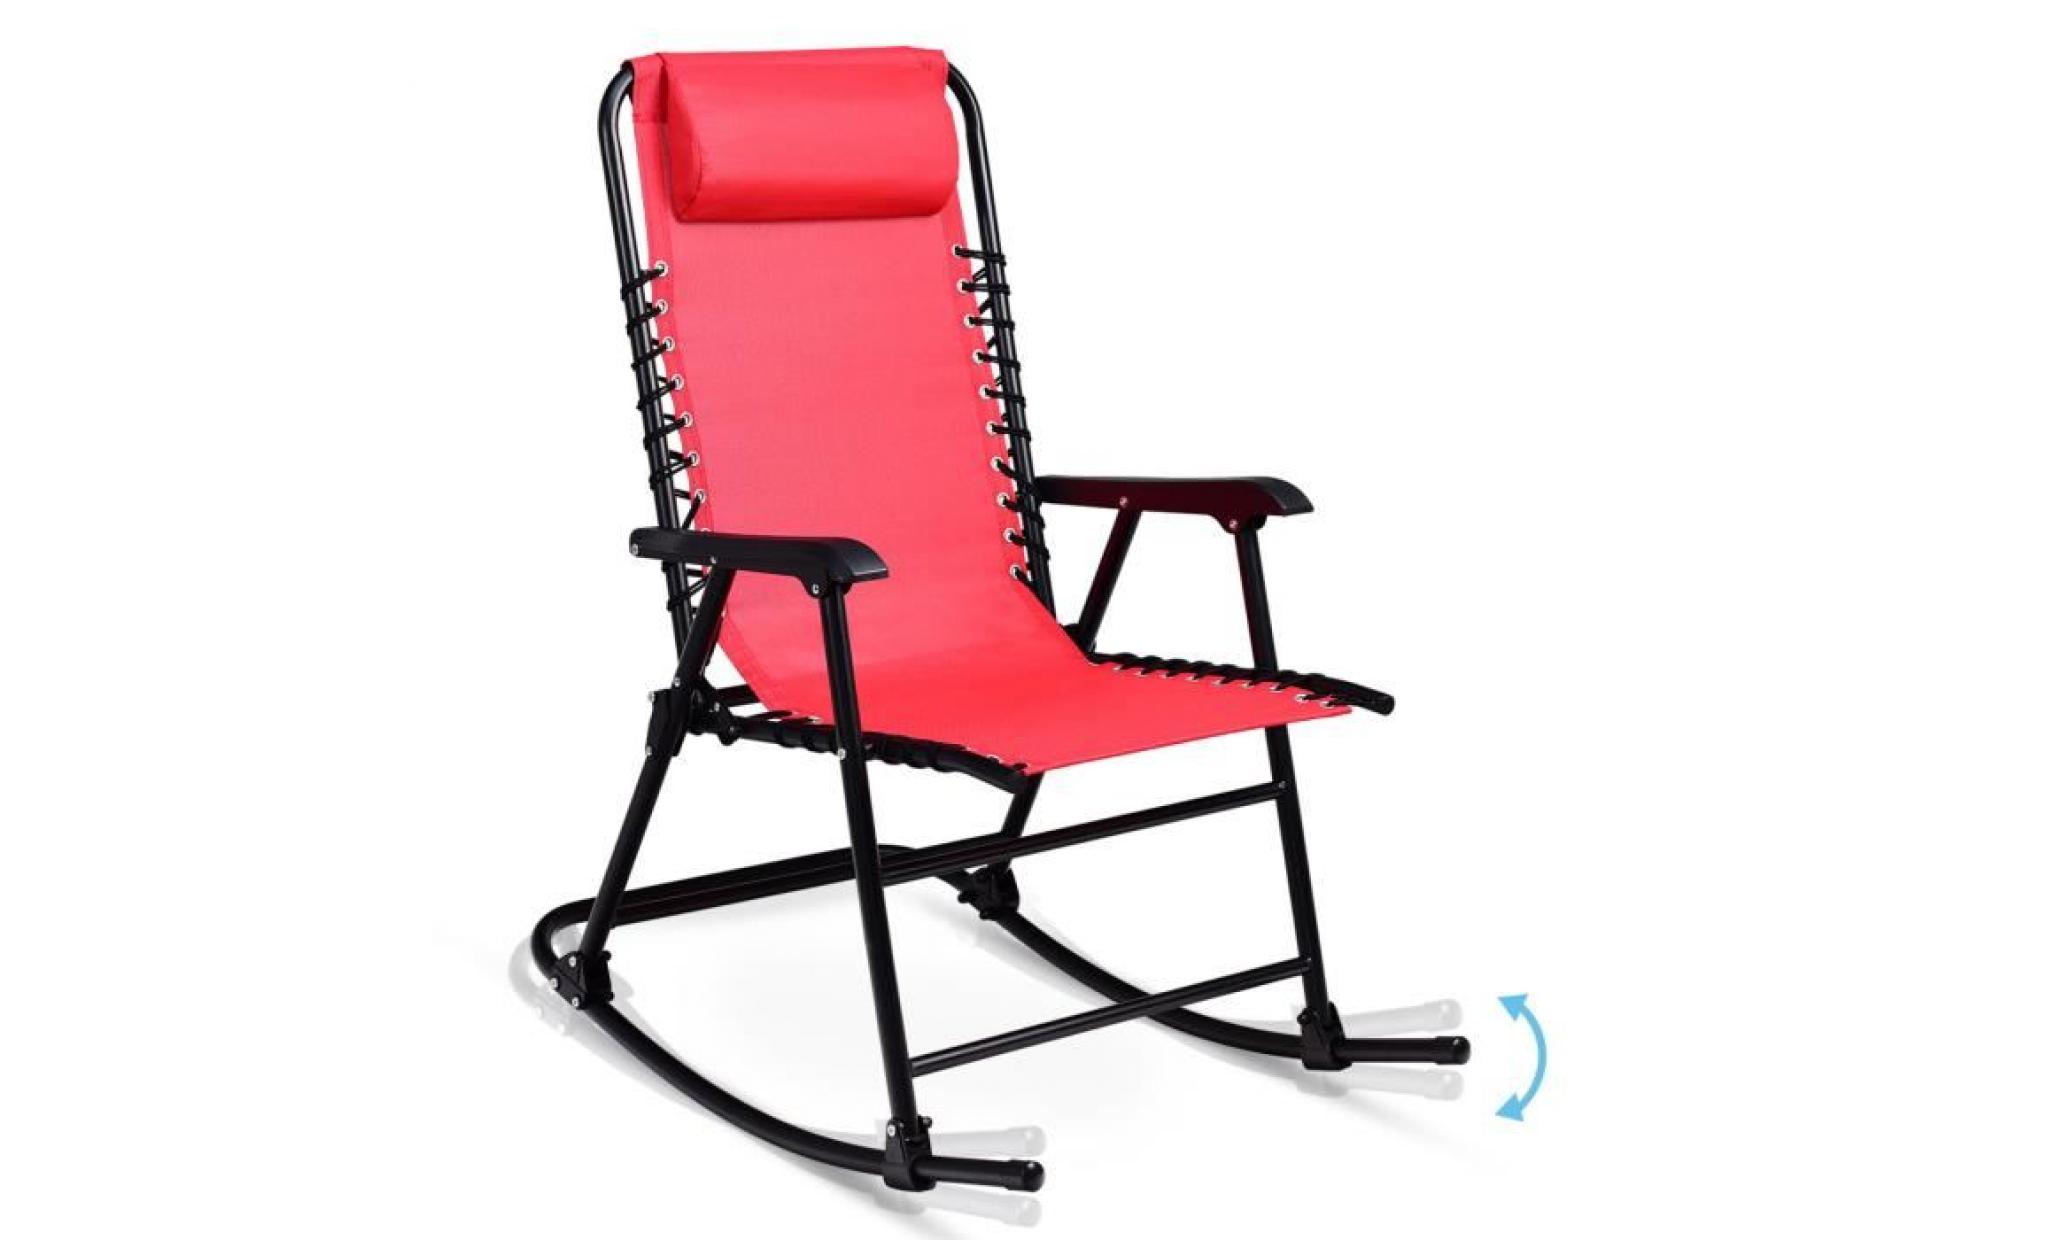 costway chaise à bascule en fer fauteuil à bascule en fer inclinable 86 x 63 x 95 cm pour balcon jardin salle fauteuil berçante